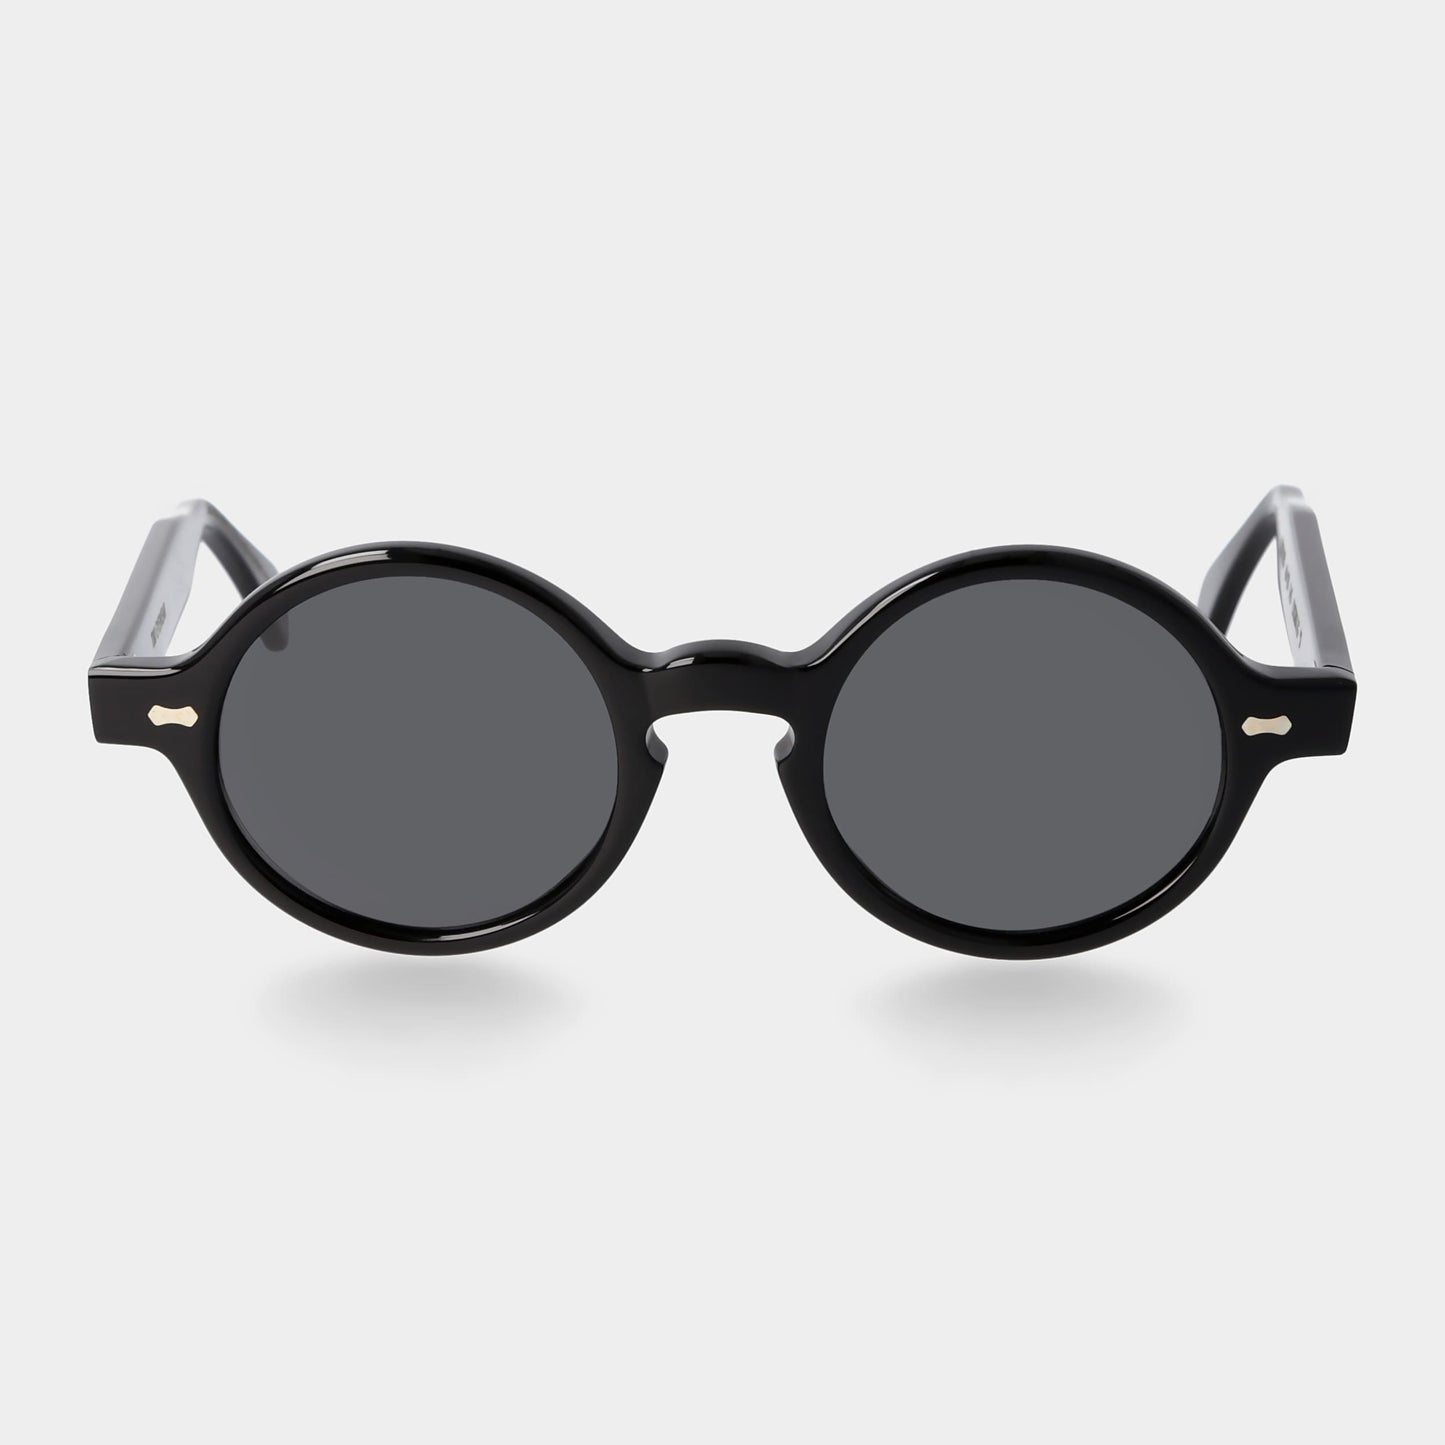 TBD Eyewear Oxford Eco Black / Grey